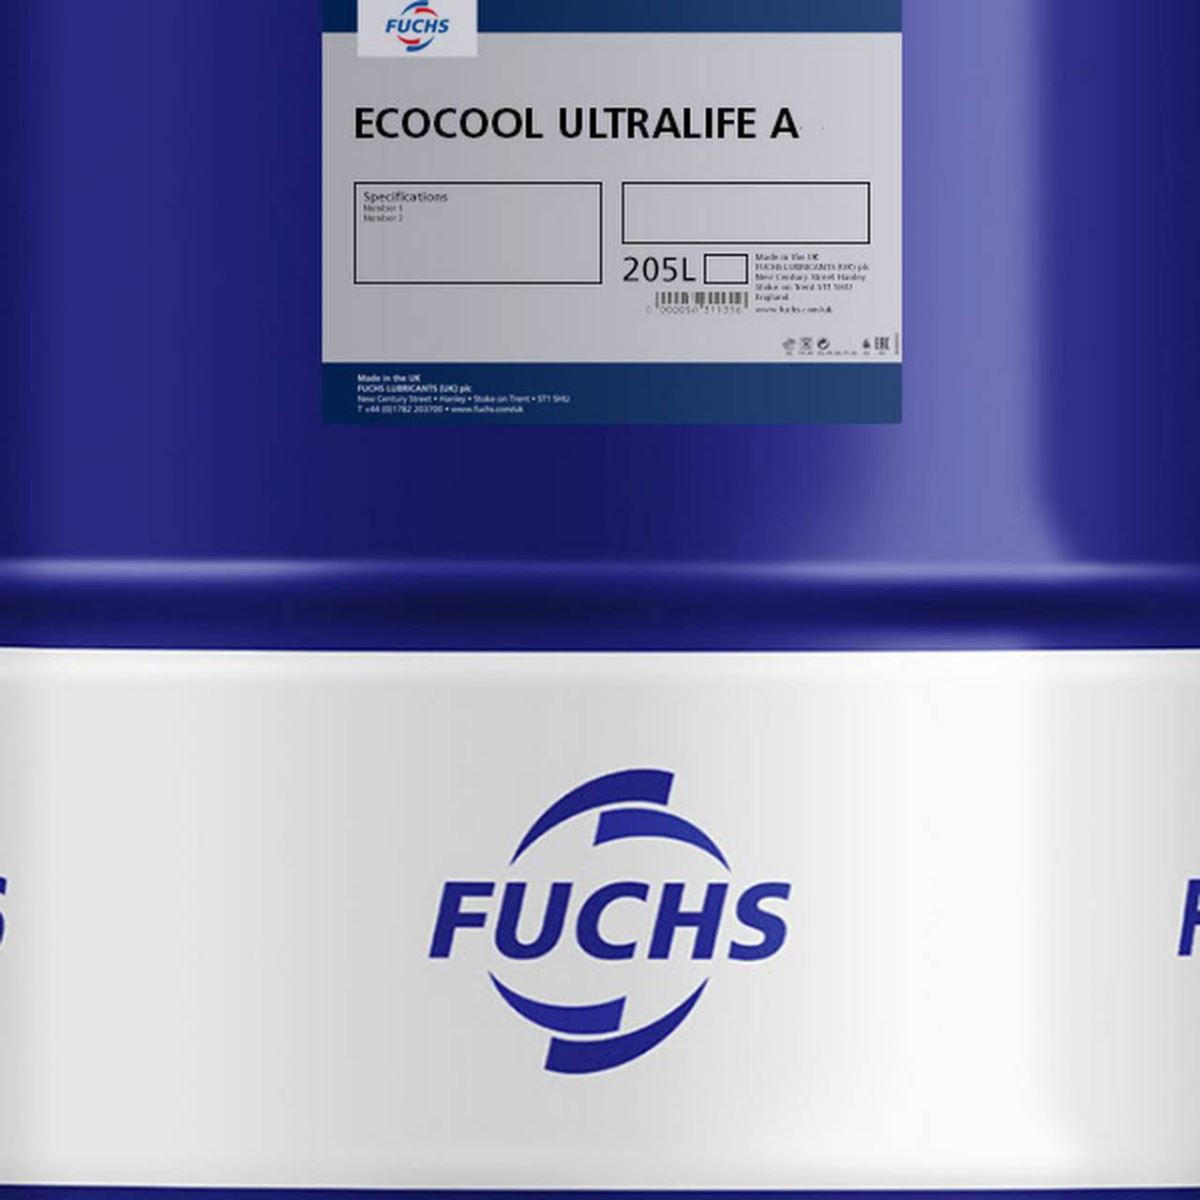 Fuchs-Ecocool-Ultralife-A